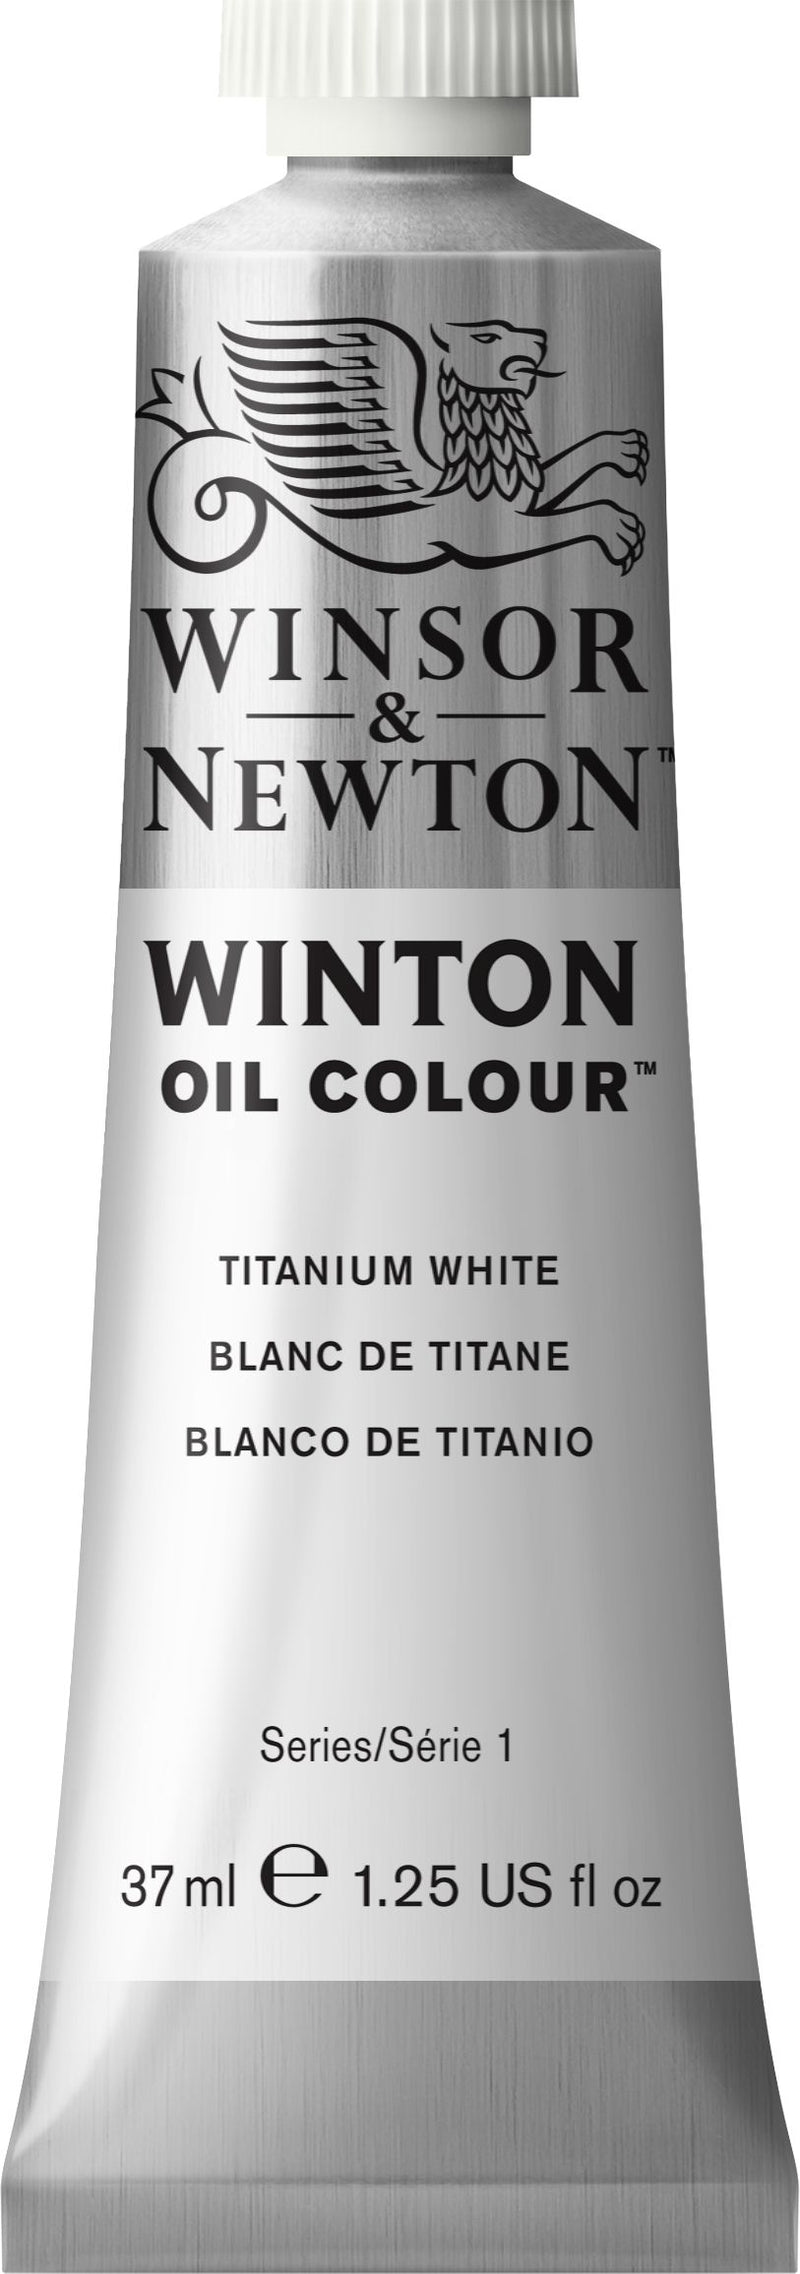 Winton Oil Colour Titanium White - 37ml tube